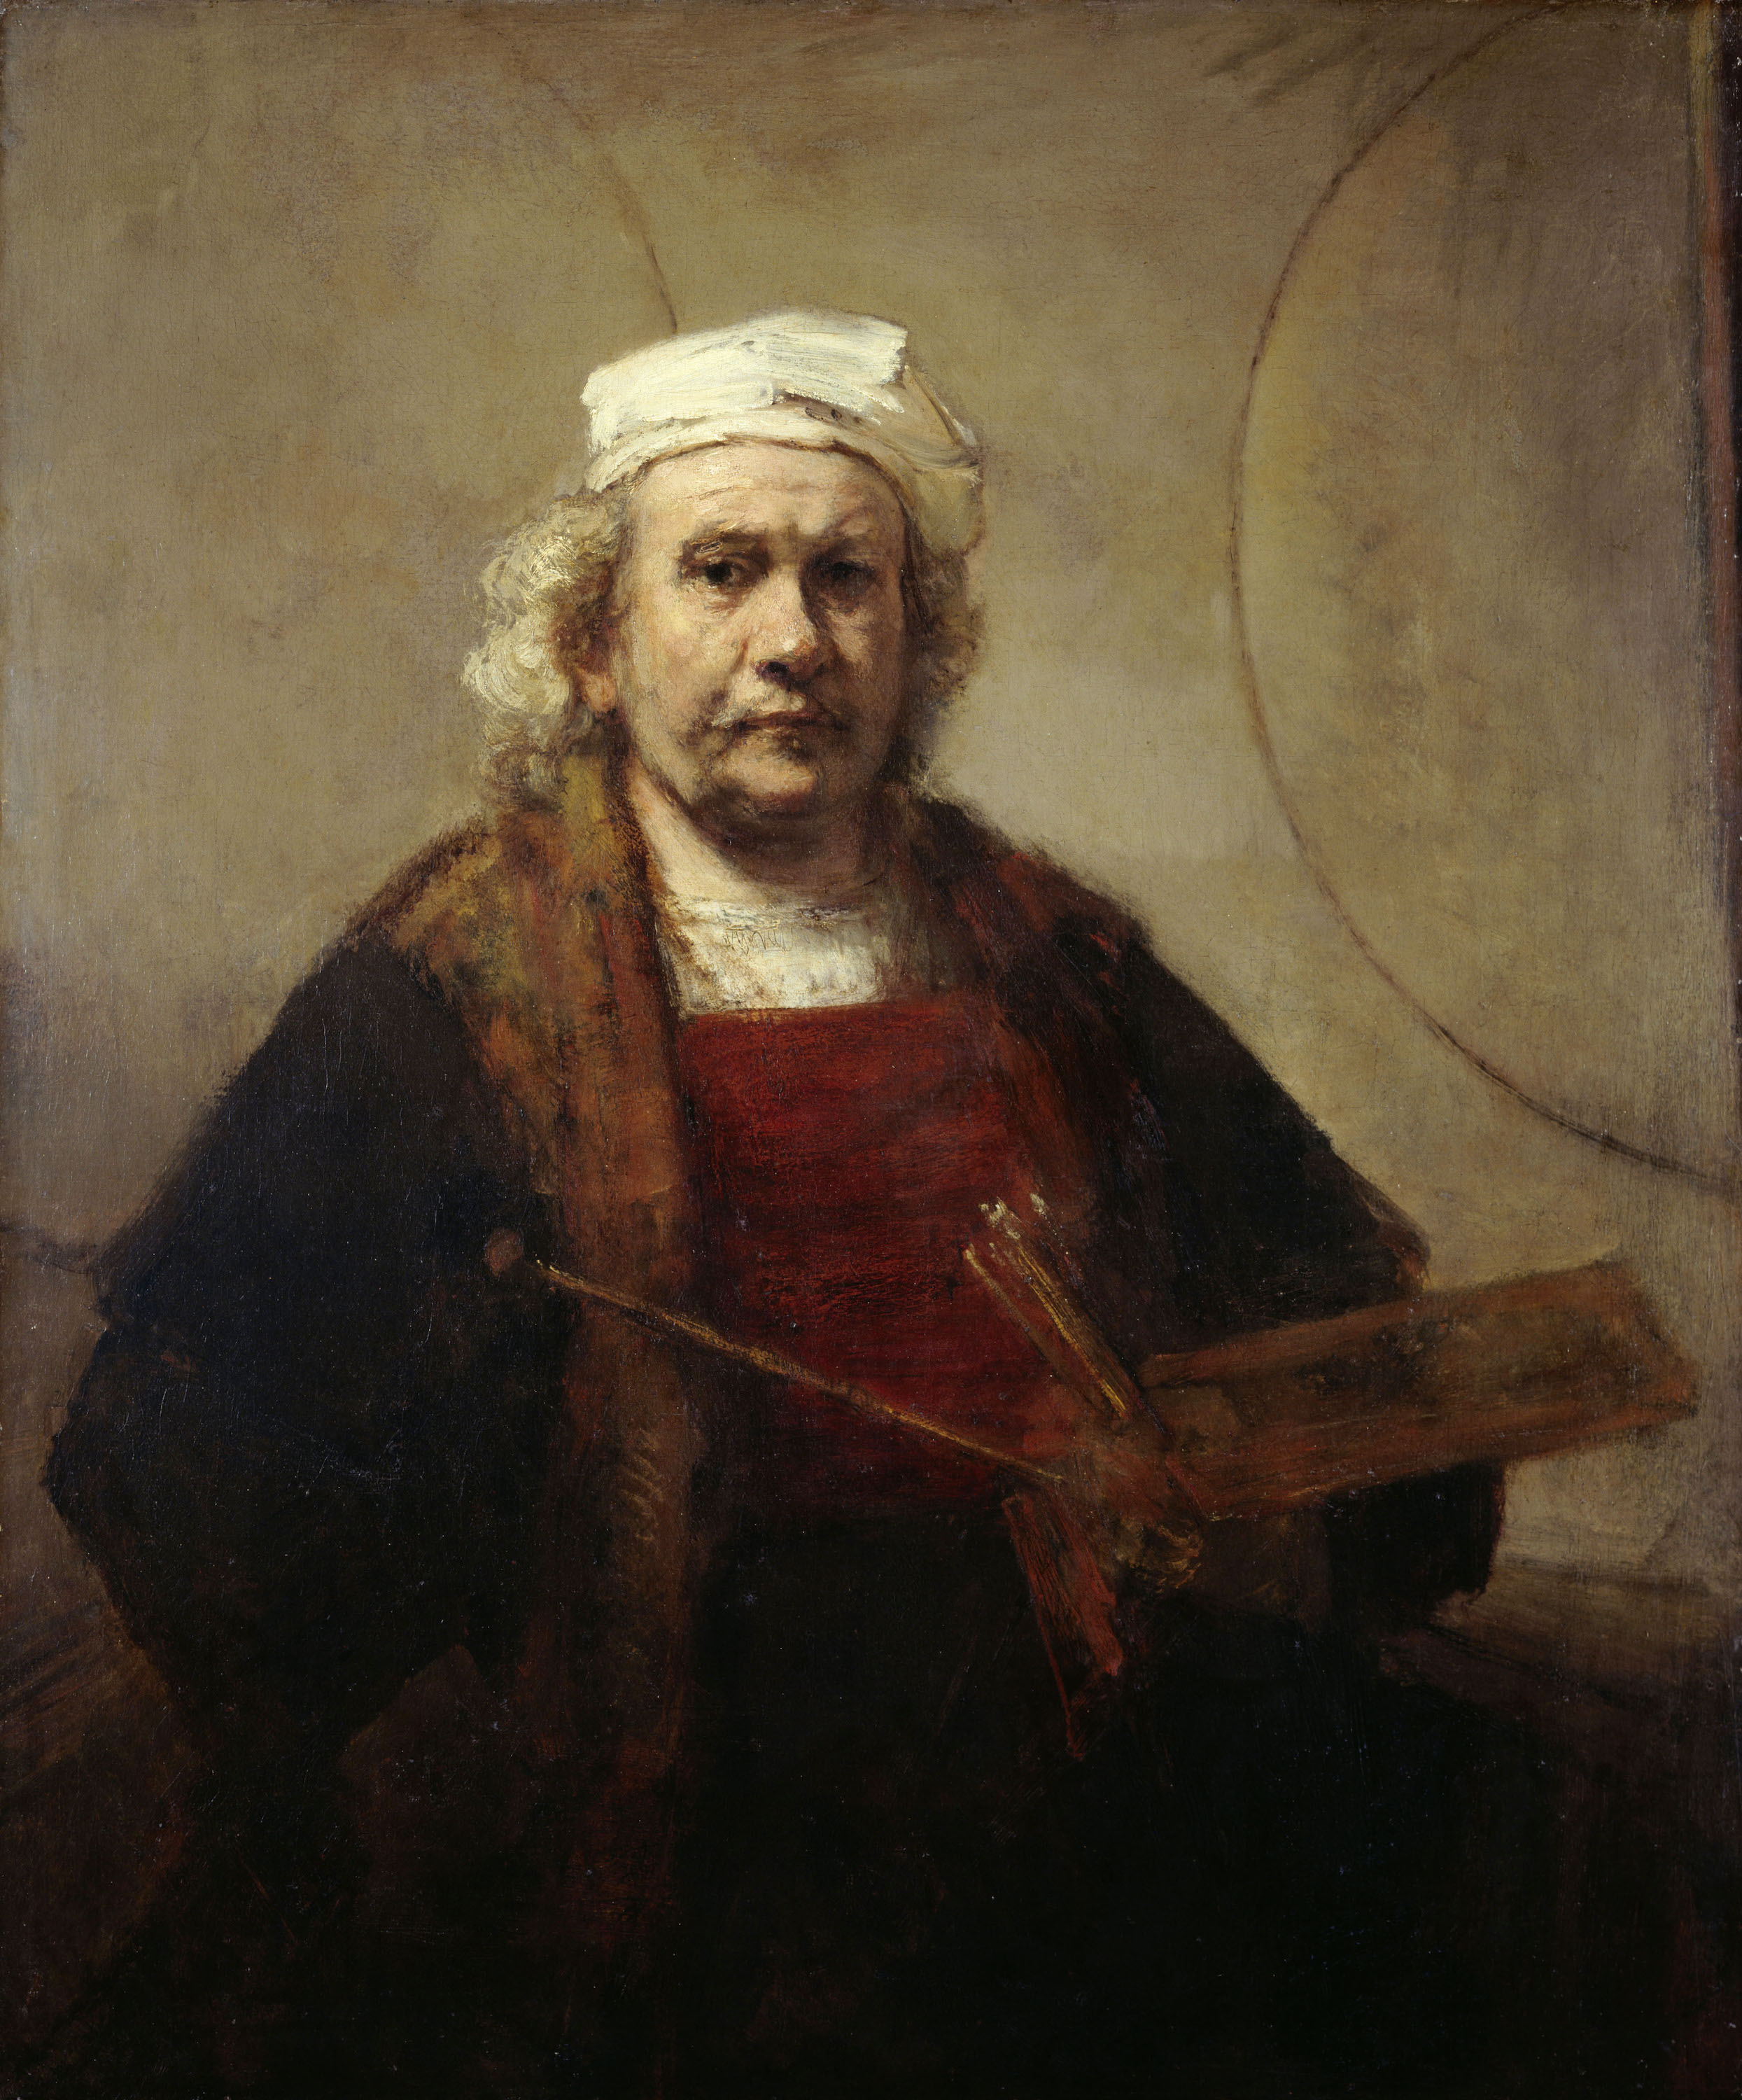 Autoportrait aux deux cercles by Rembrandt van Rijn - v. 1665–1669 - 114.3 × 94 cm Kenwood House